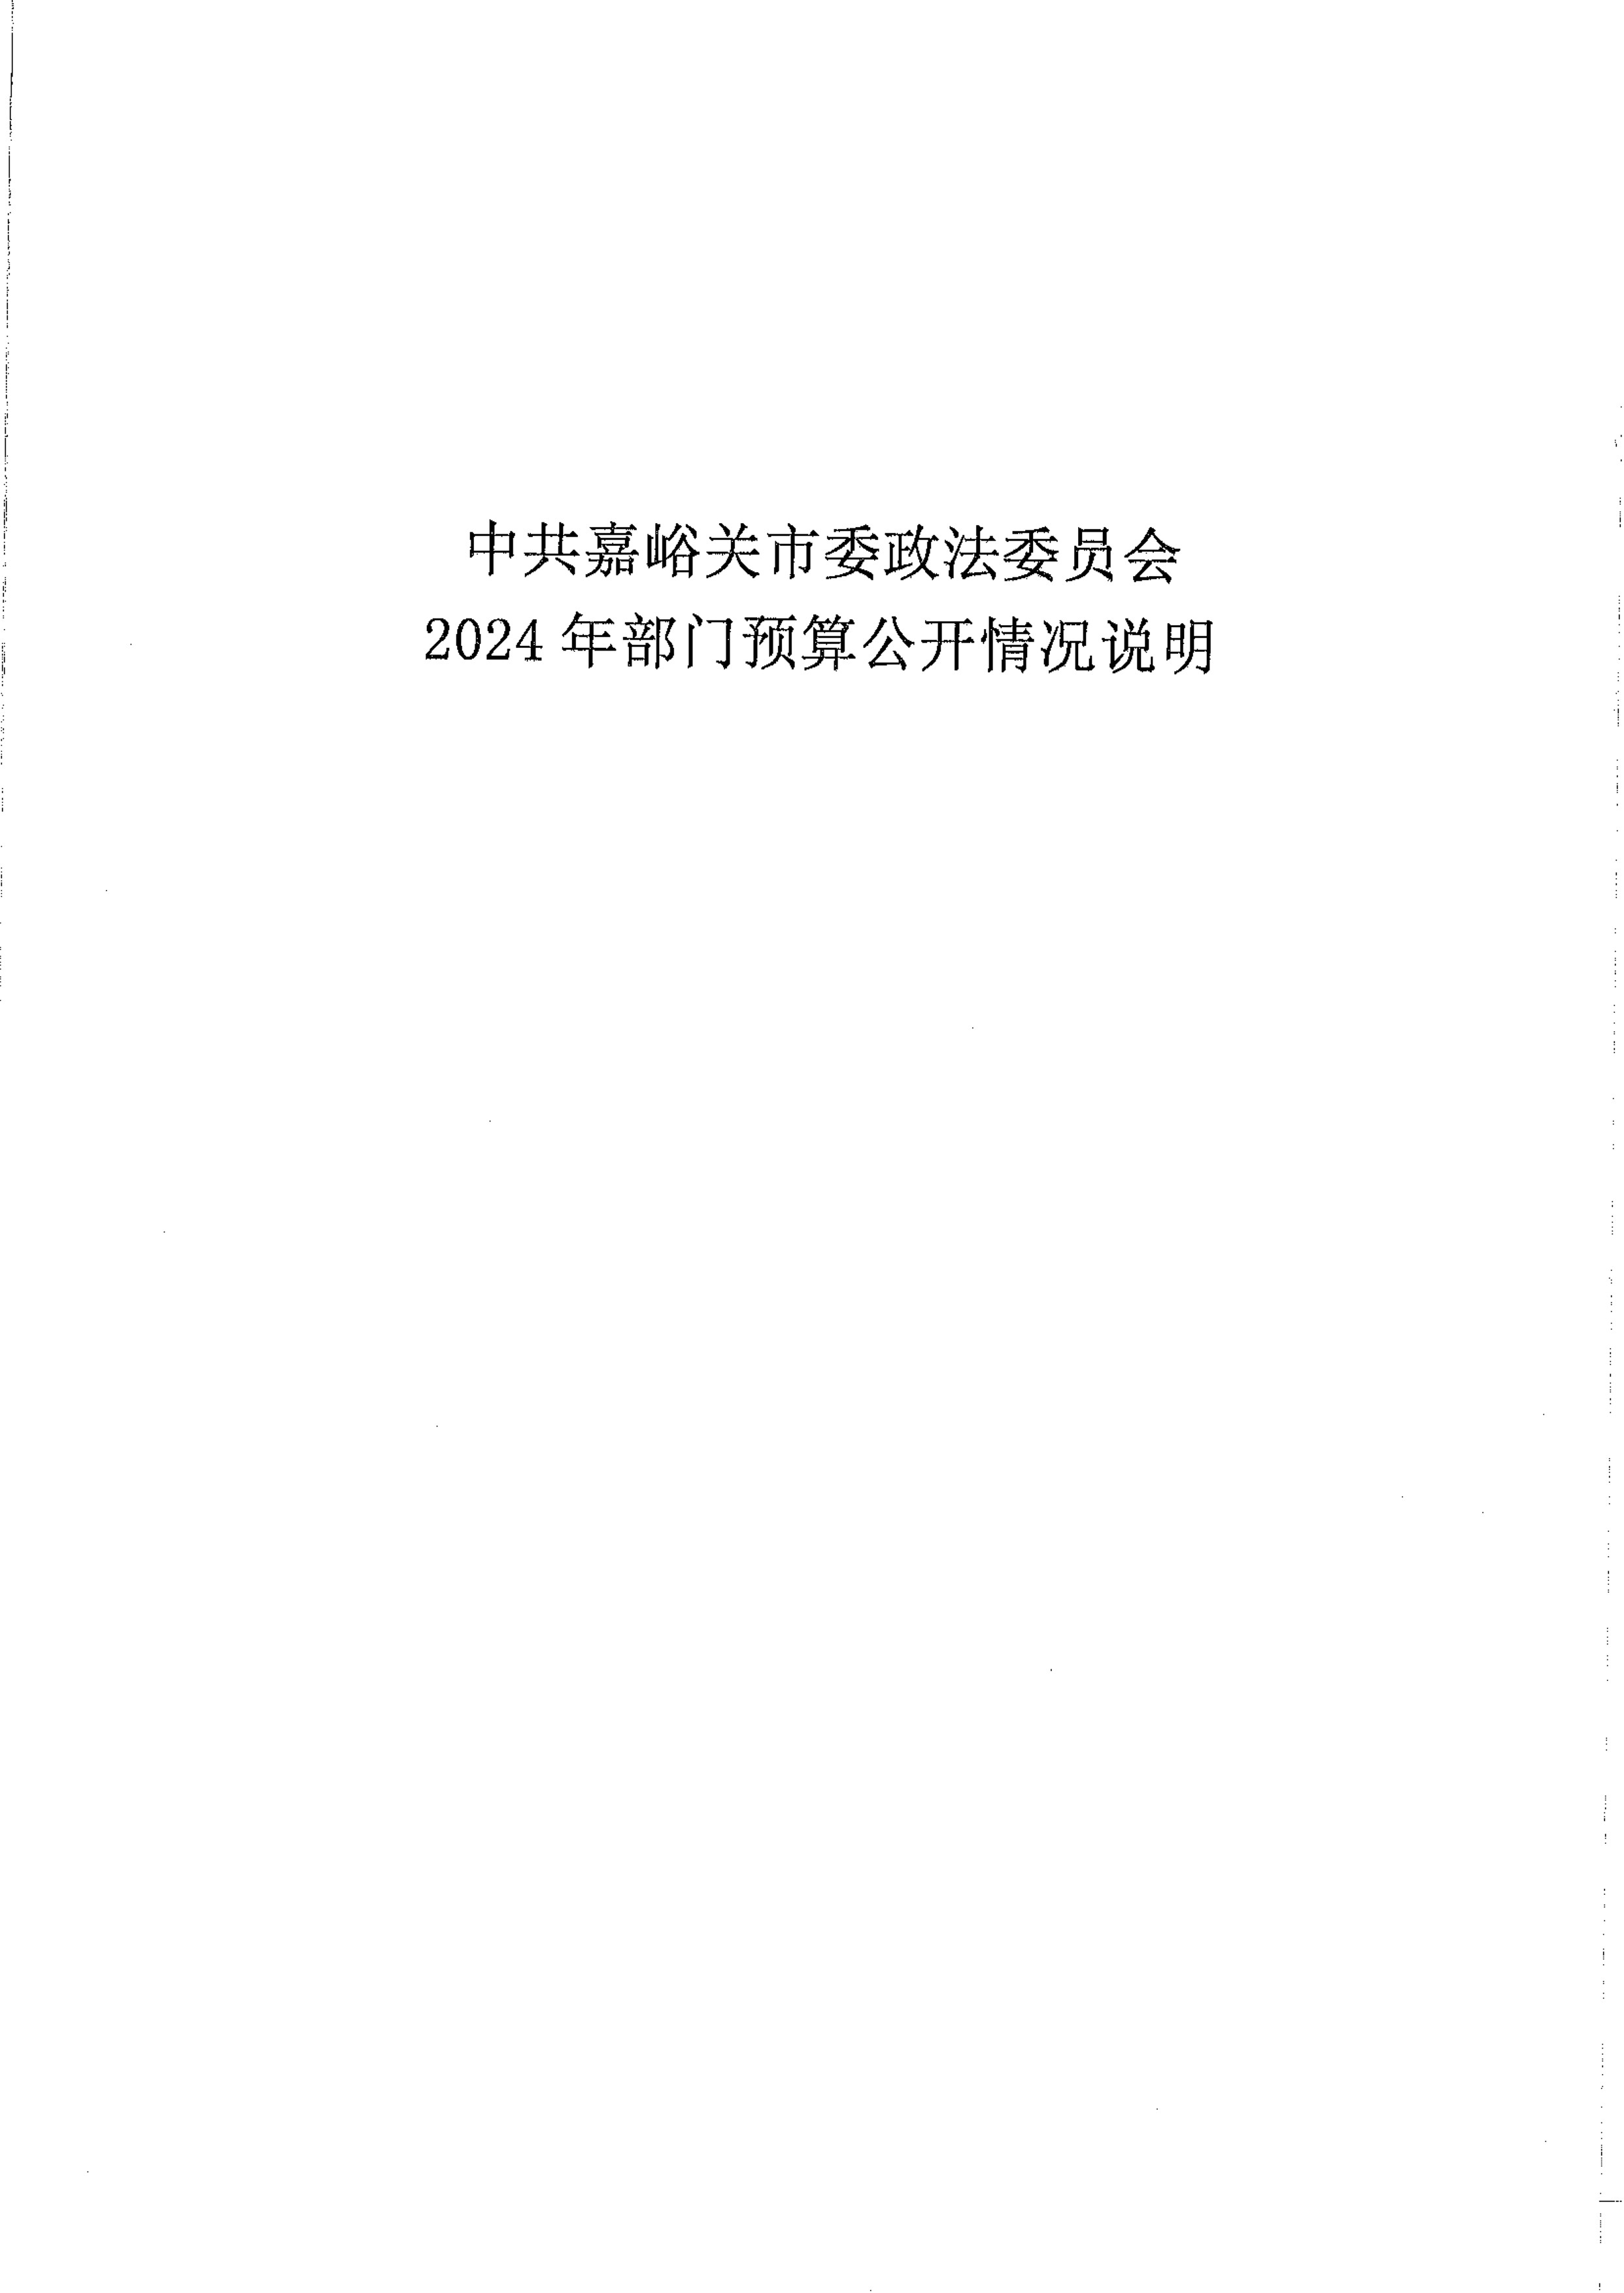 中共嘉峪关市委政法委员会2024年部门预算公开情况说明_1